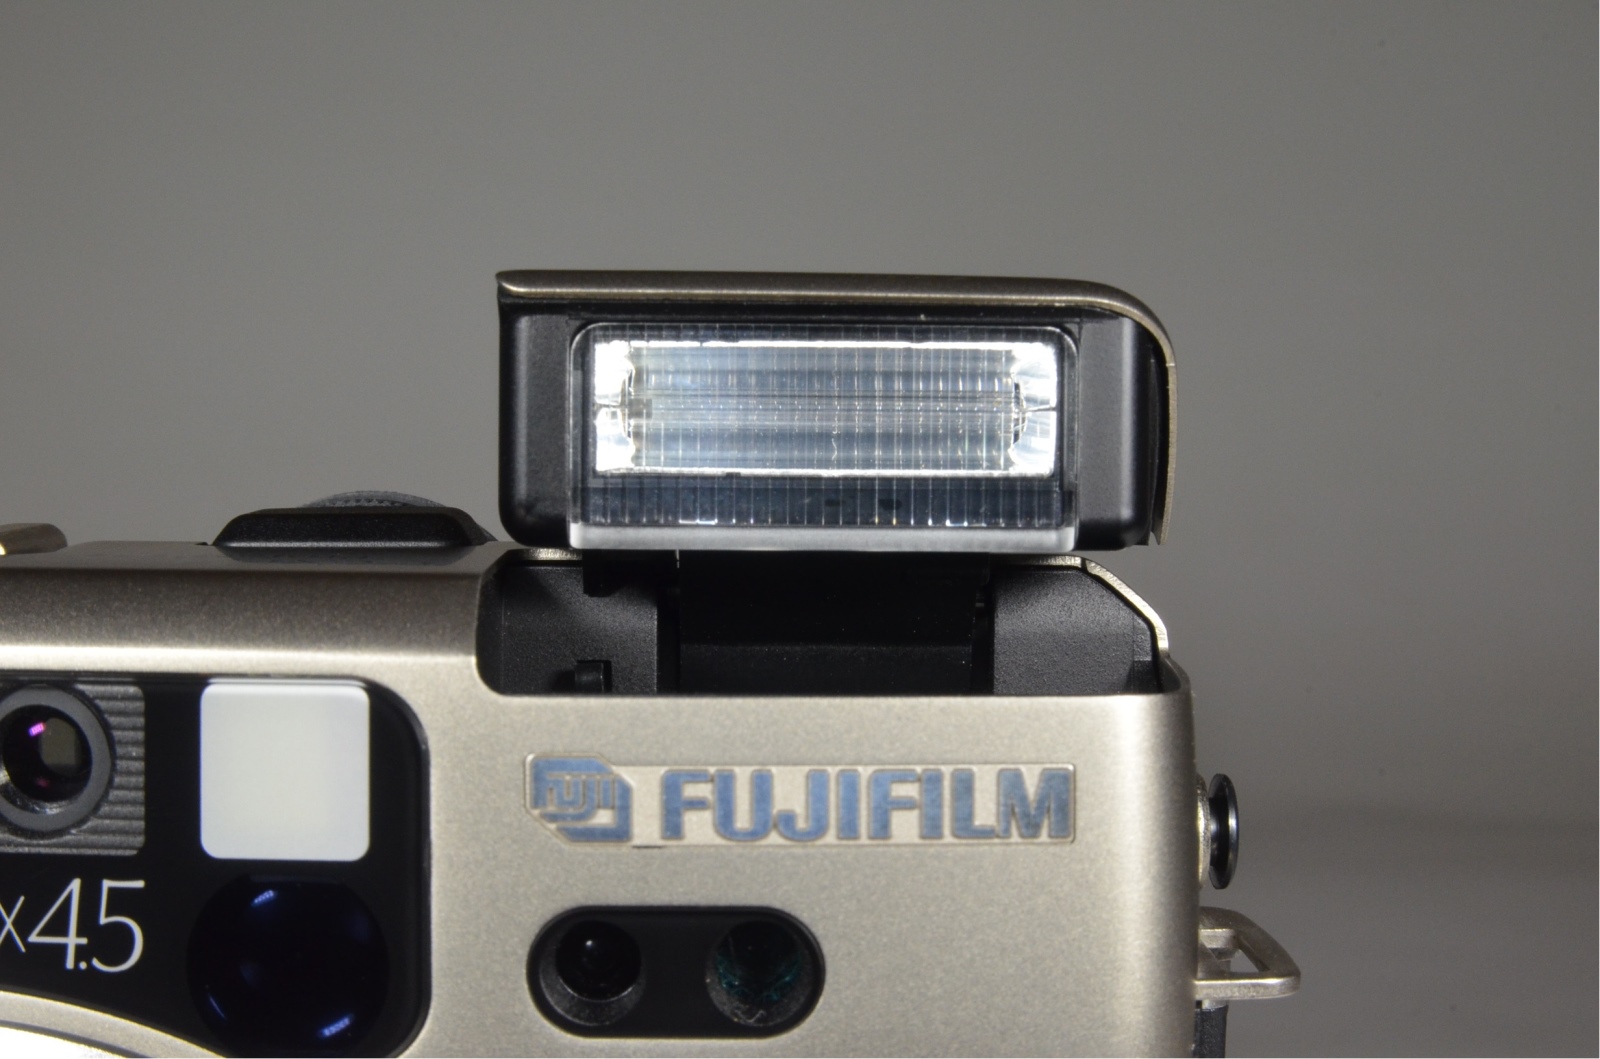 fujifilm ga645zi black zoom 55-90mm f4.5-6.9